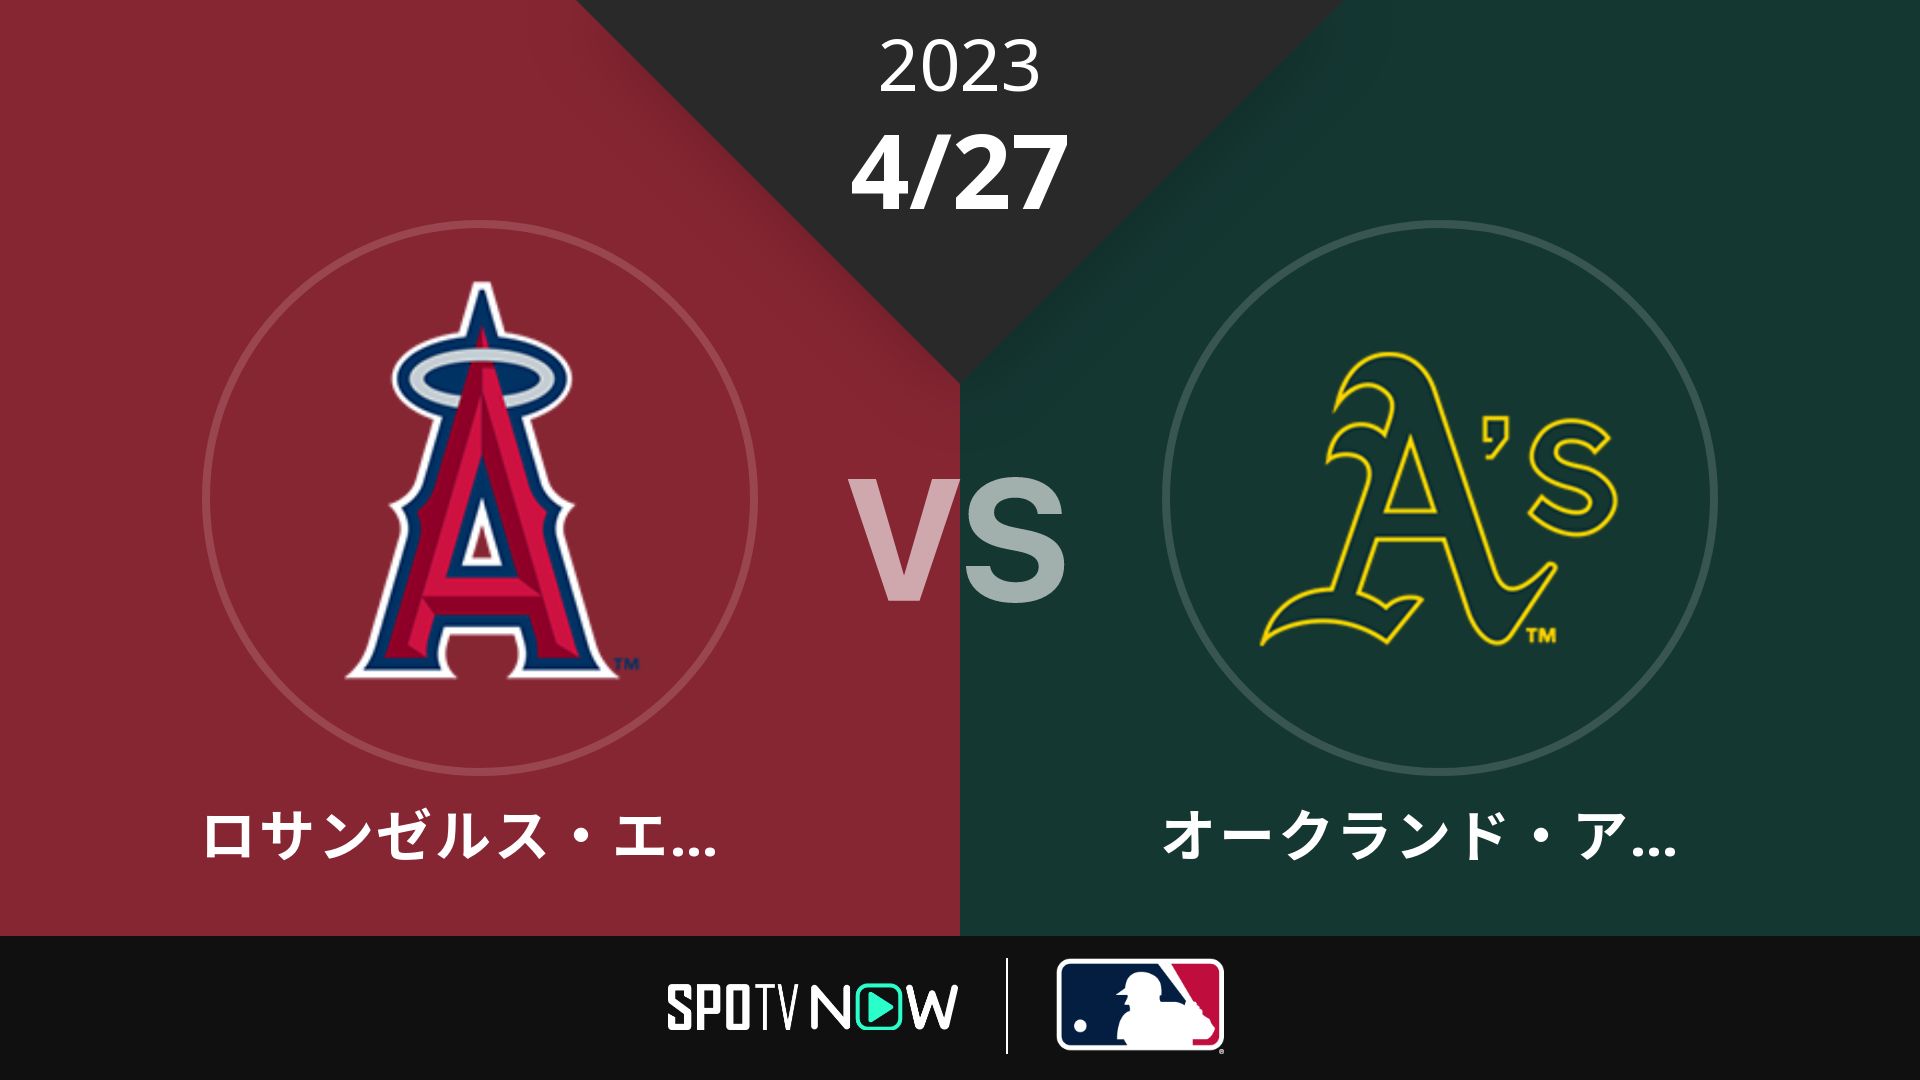 2023/4/27 エンゼルス vs アスレチックス [MLB]